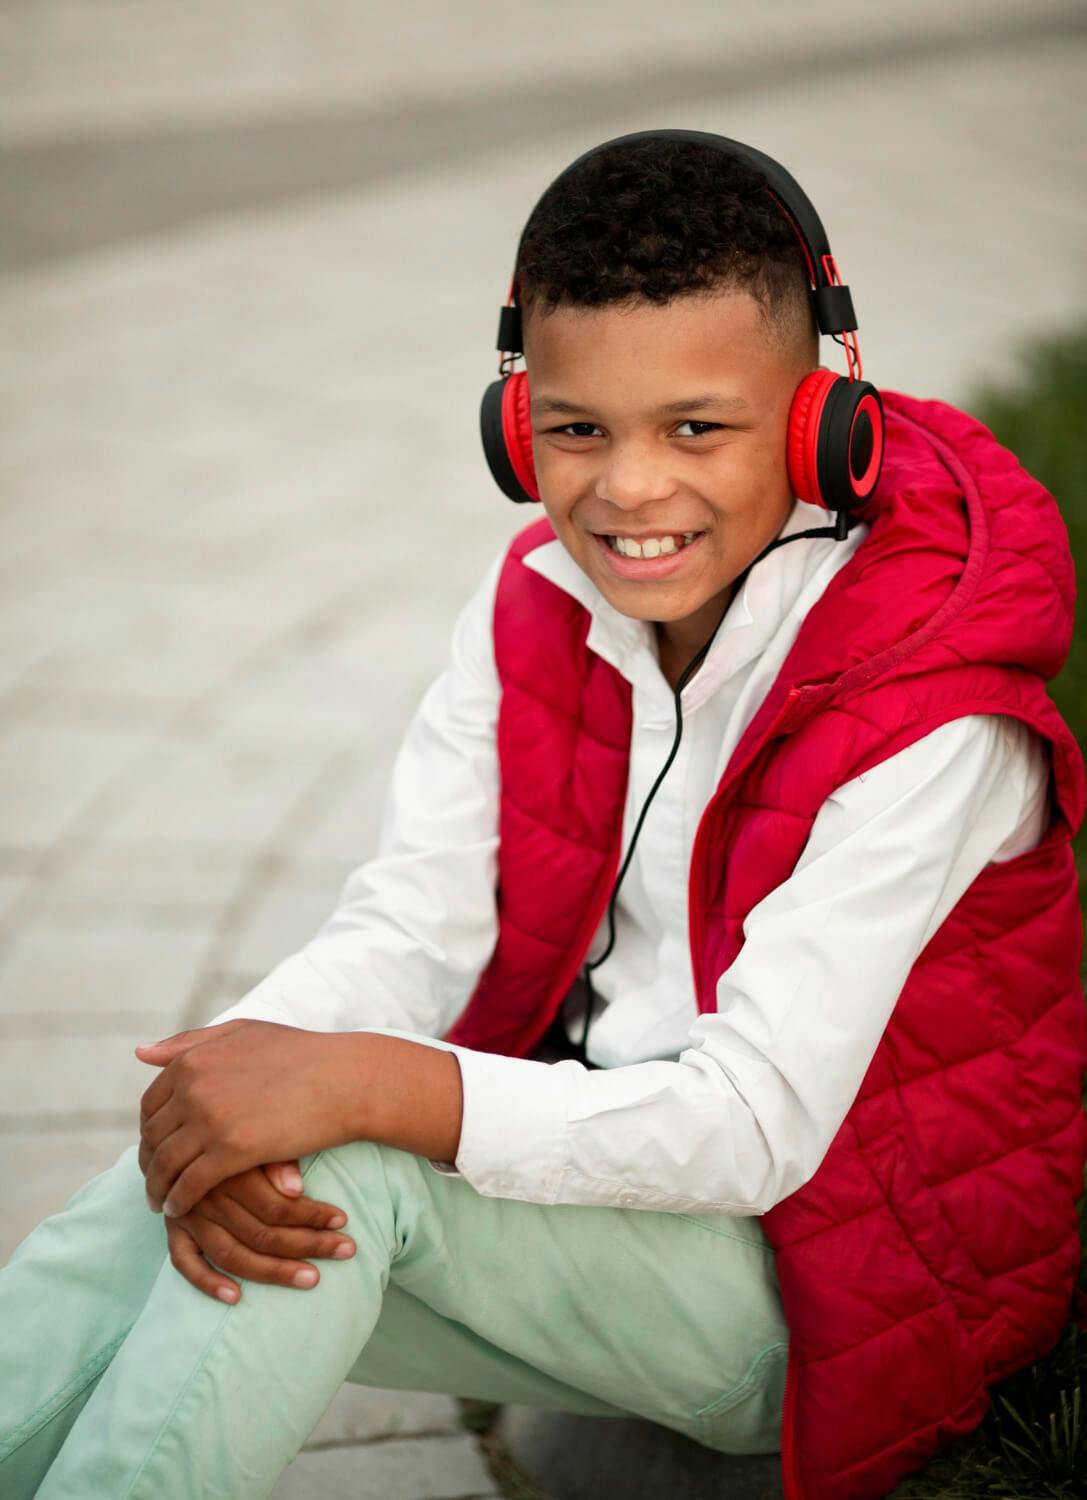 Un niño con autismo utilizando auriculares con cancelación de ruido como estrategia de afrontamiento para manejar situaciones ruidosas y abrumadoras durante el viaje.